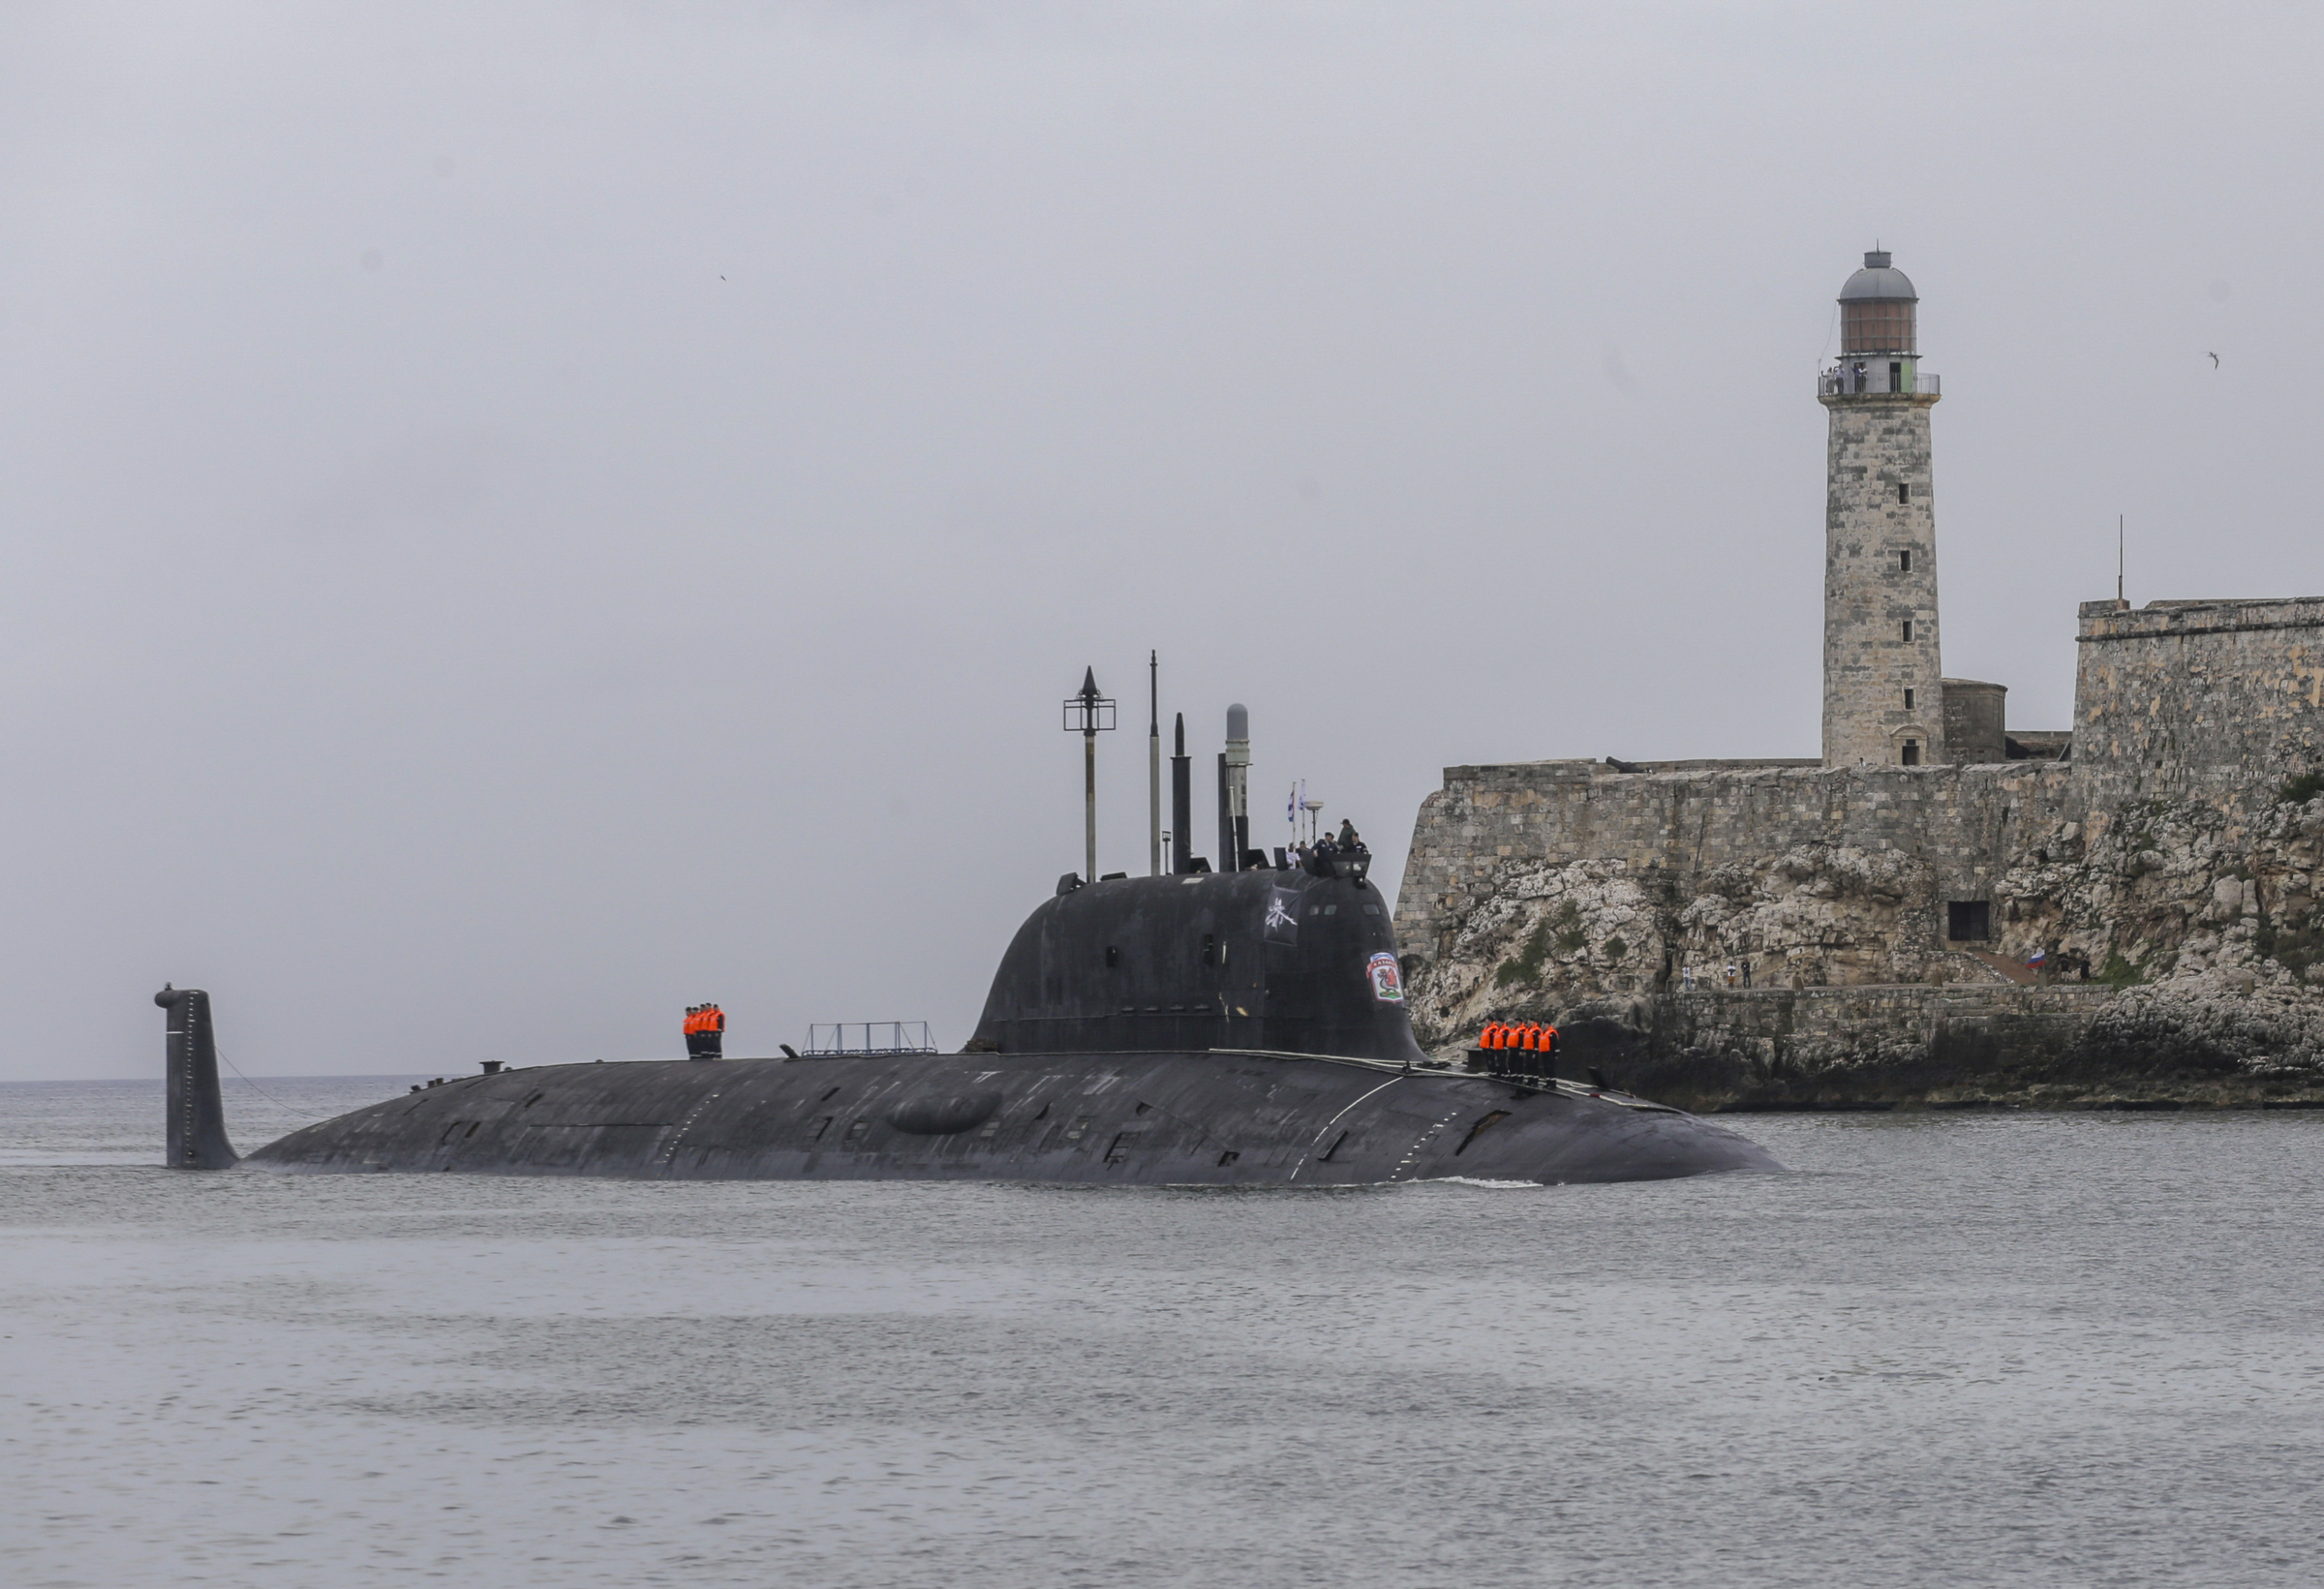 Tàu ngầm hạt nhân Kazan của Nga tới cảng Havana, Cuba ngày 12/6. Ảnh: AP